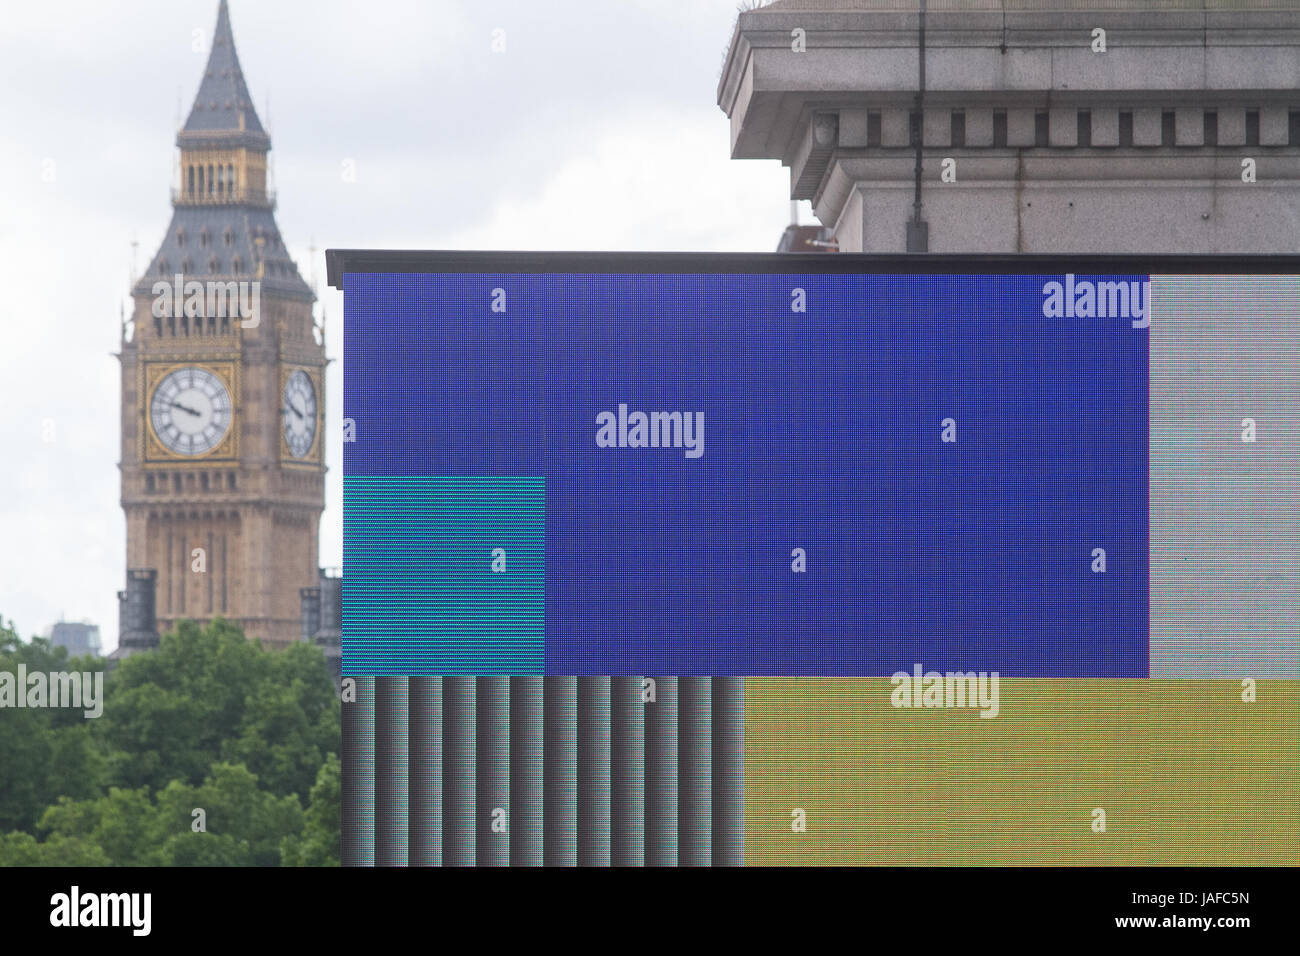 Londres, Royaume-Uni. 7 juin, 2017. Une carte électronique affiche les couleurs représentant les principaux partis politiques le dernier jour de la campagne électorale britannique avant le rendez-vous aux urnes le 8 juin pour décider du prochain gouvernement Crédit : amer ghazzal/Alamy Live News Banque D'Images